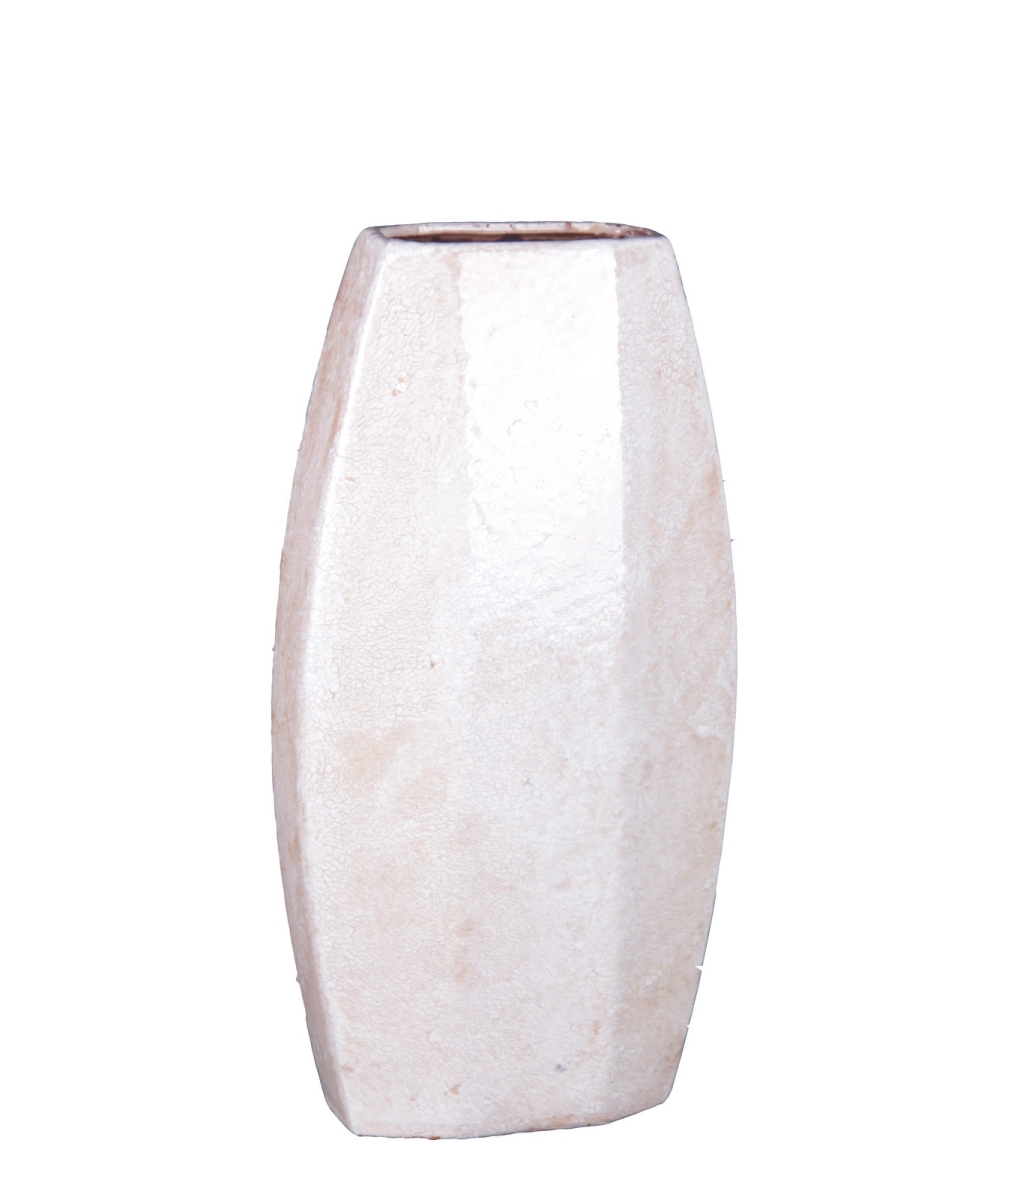 66635 Small Ceramic Vase, 9 X 4.5 X 17 In.